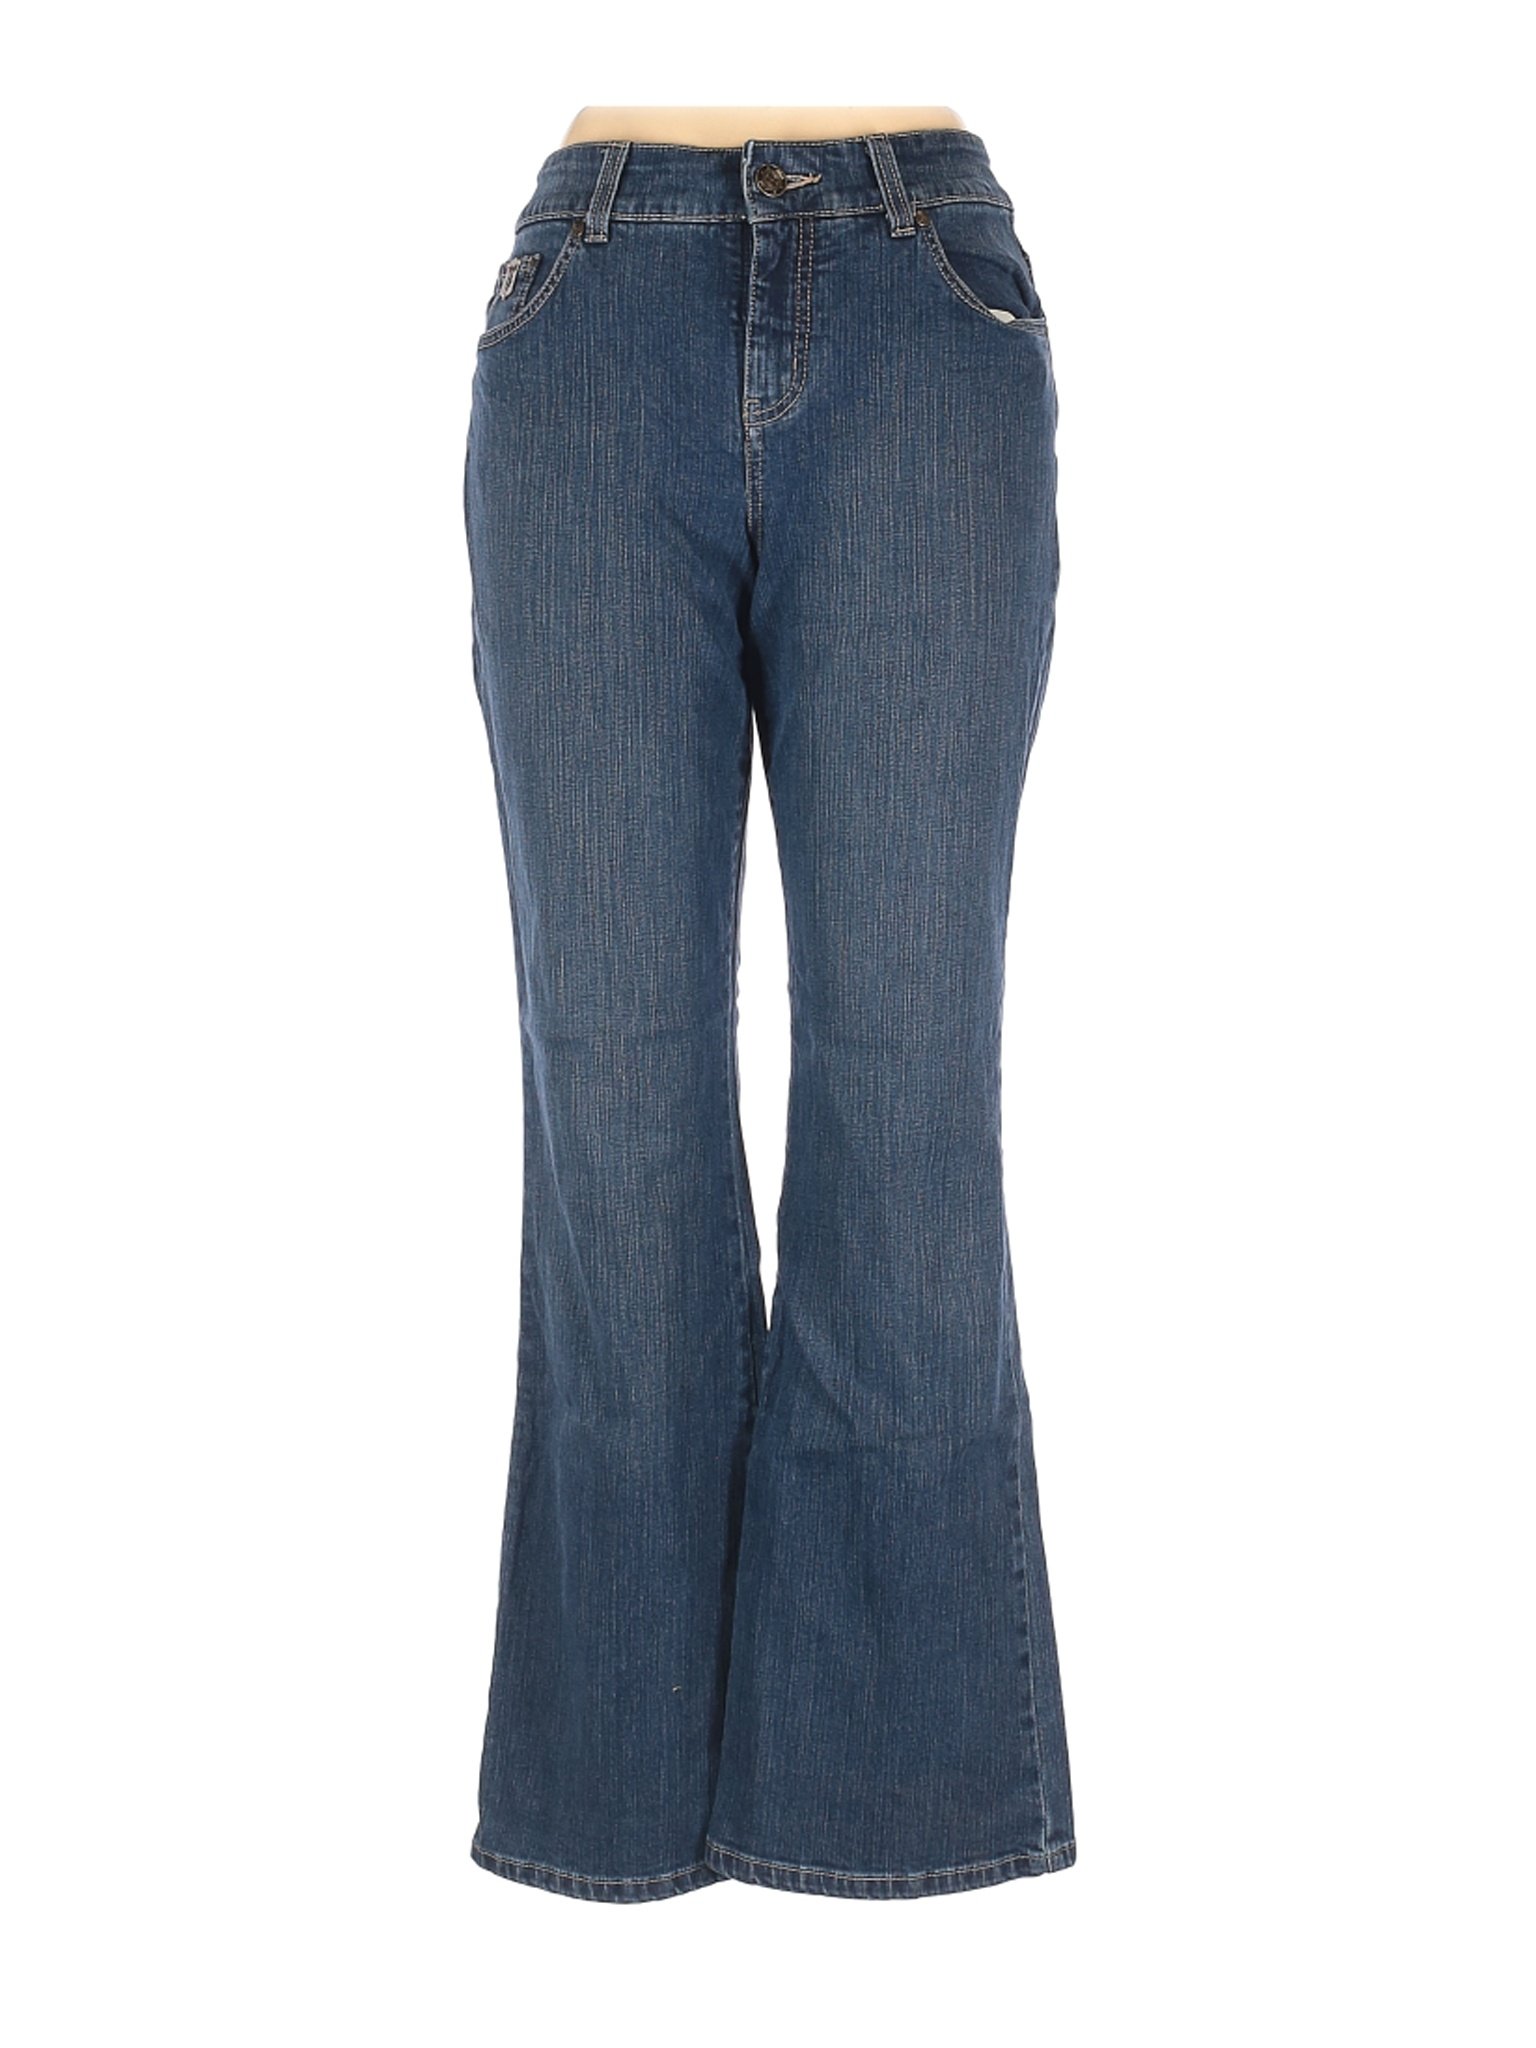 Ruff Hewn Women Blue Jeans 10 | eBay